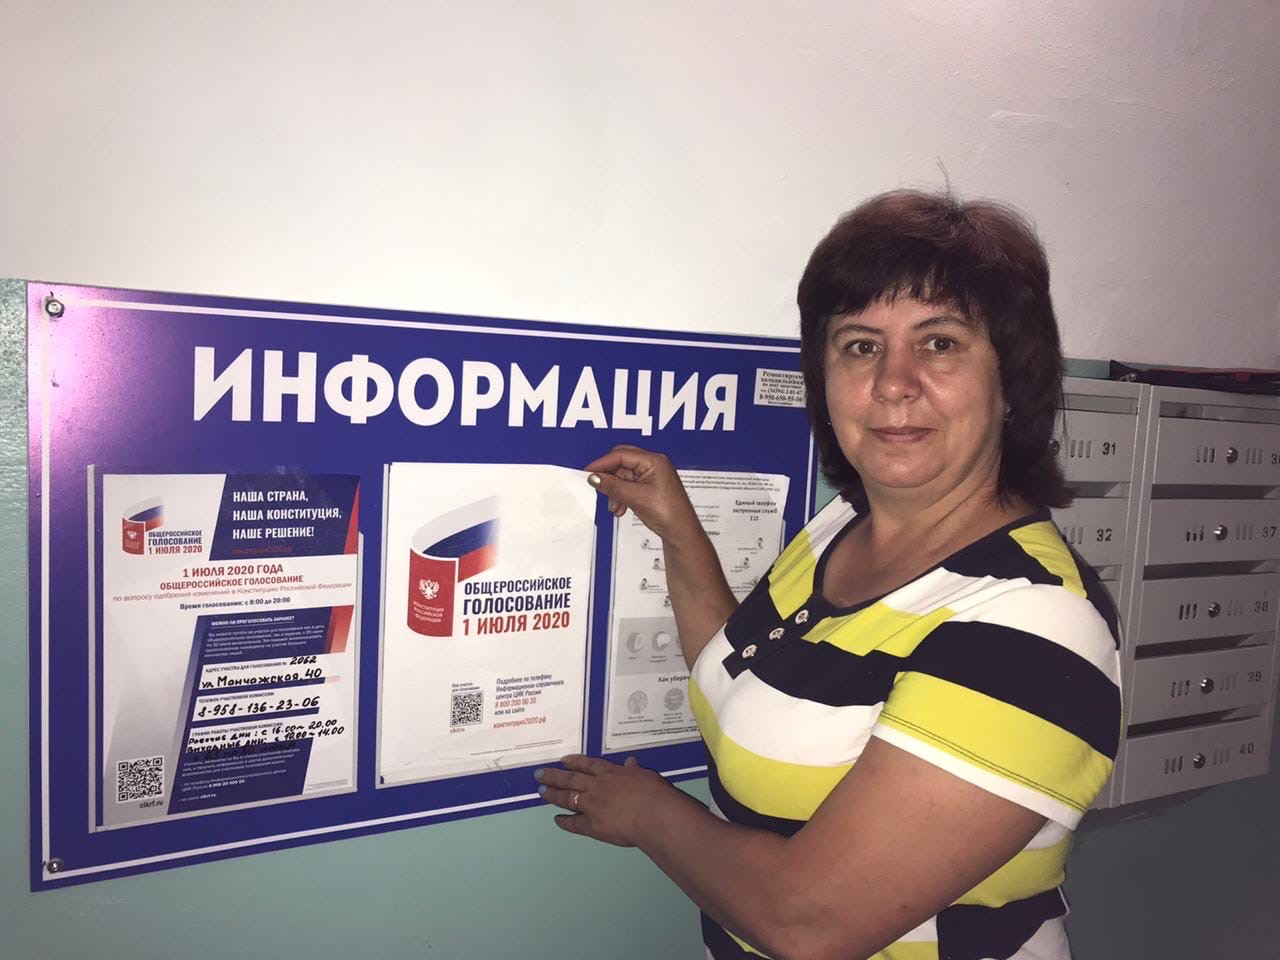 Где можно проголосовать. Как можно проголосовать. Участковая избирательная комиссия номер 1 Москва. Где можно проголосовать без регистрации